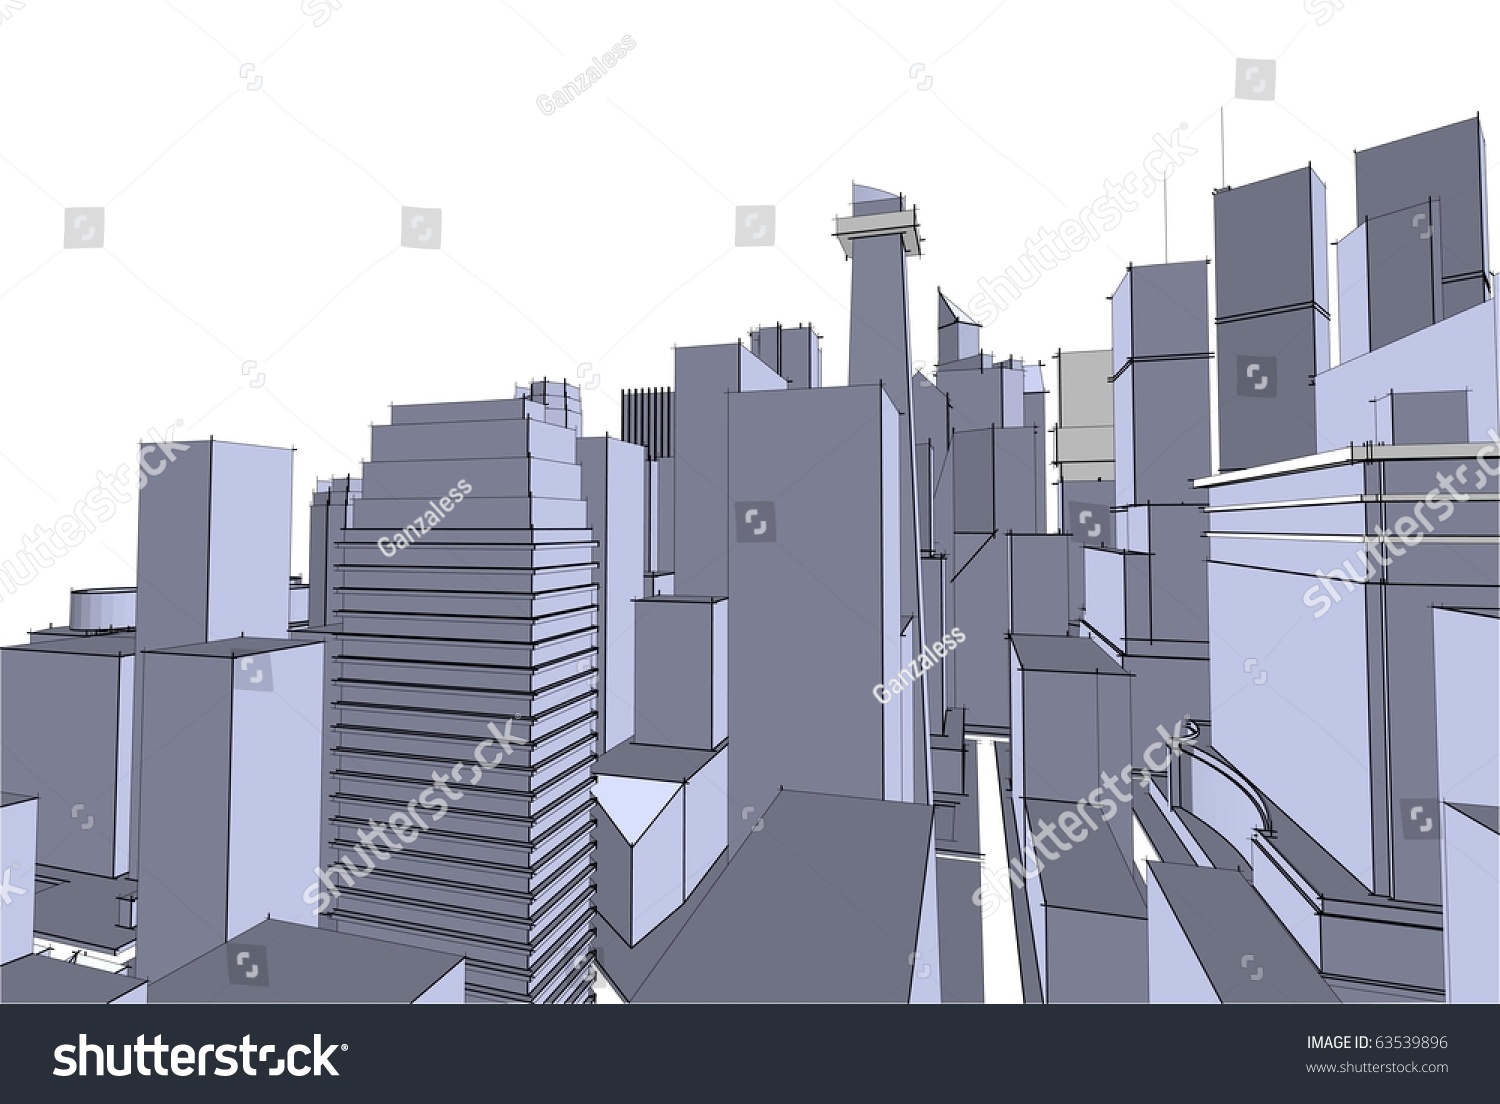 Grey City Stock Vector Illustration 63539896 : Shutterstock